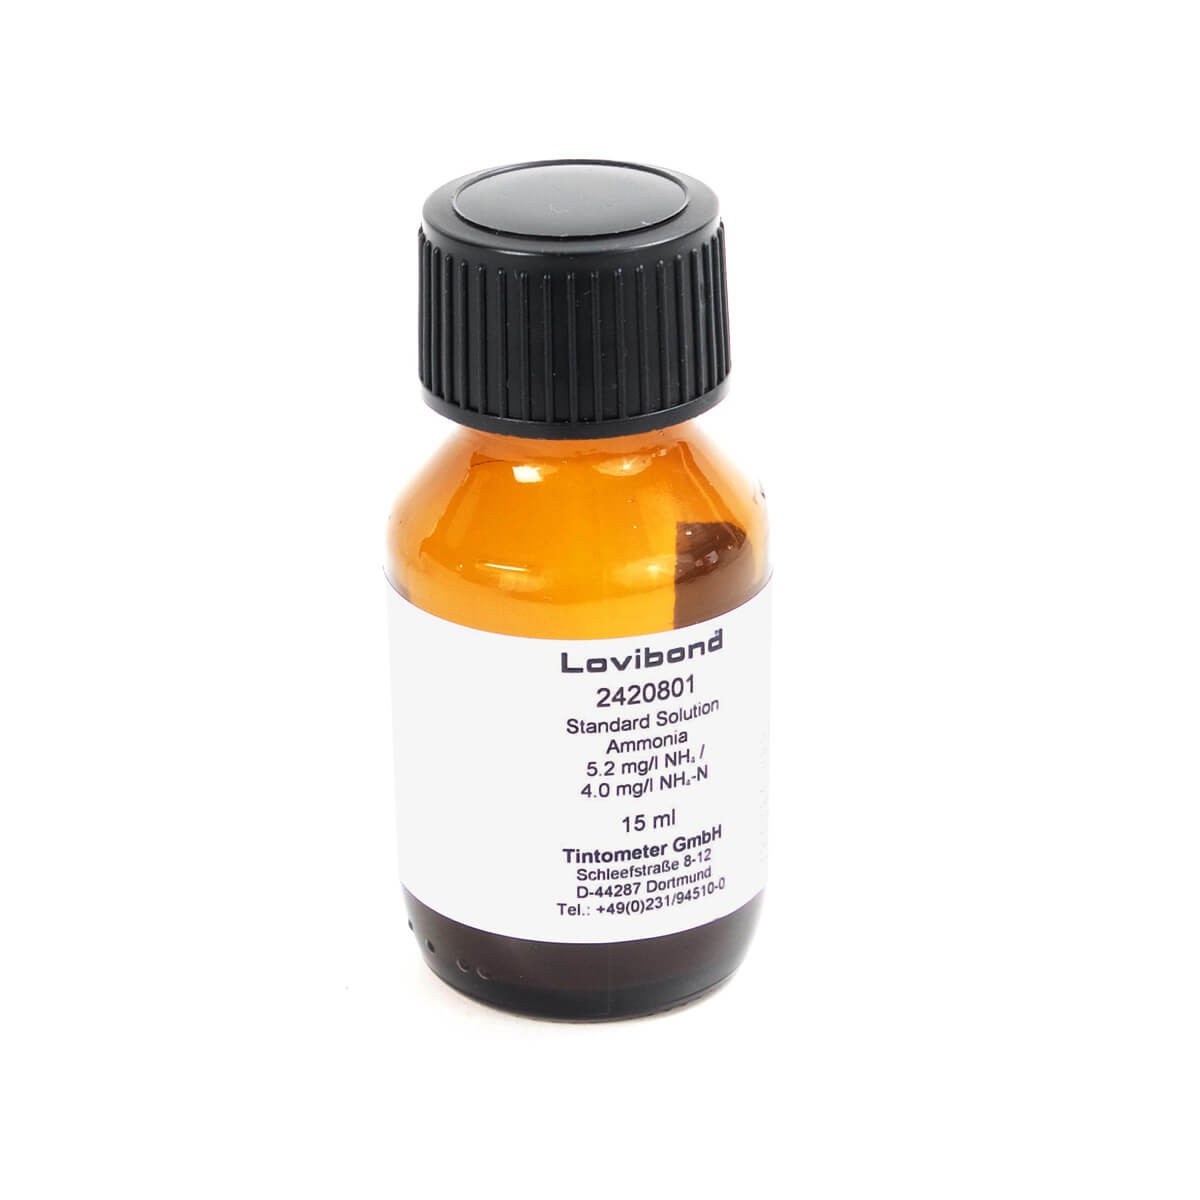 2420801 铵标准溶液，5.2 mg/l NH4 = 4.0 mg/l N